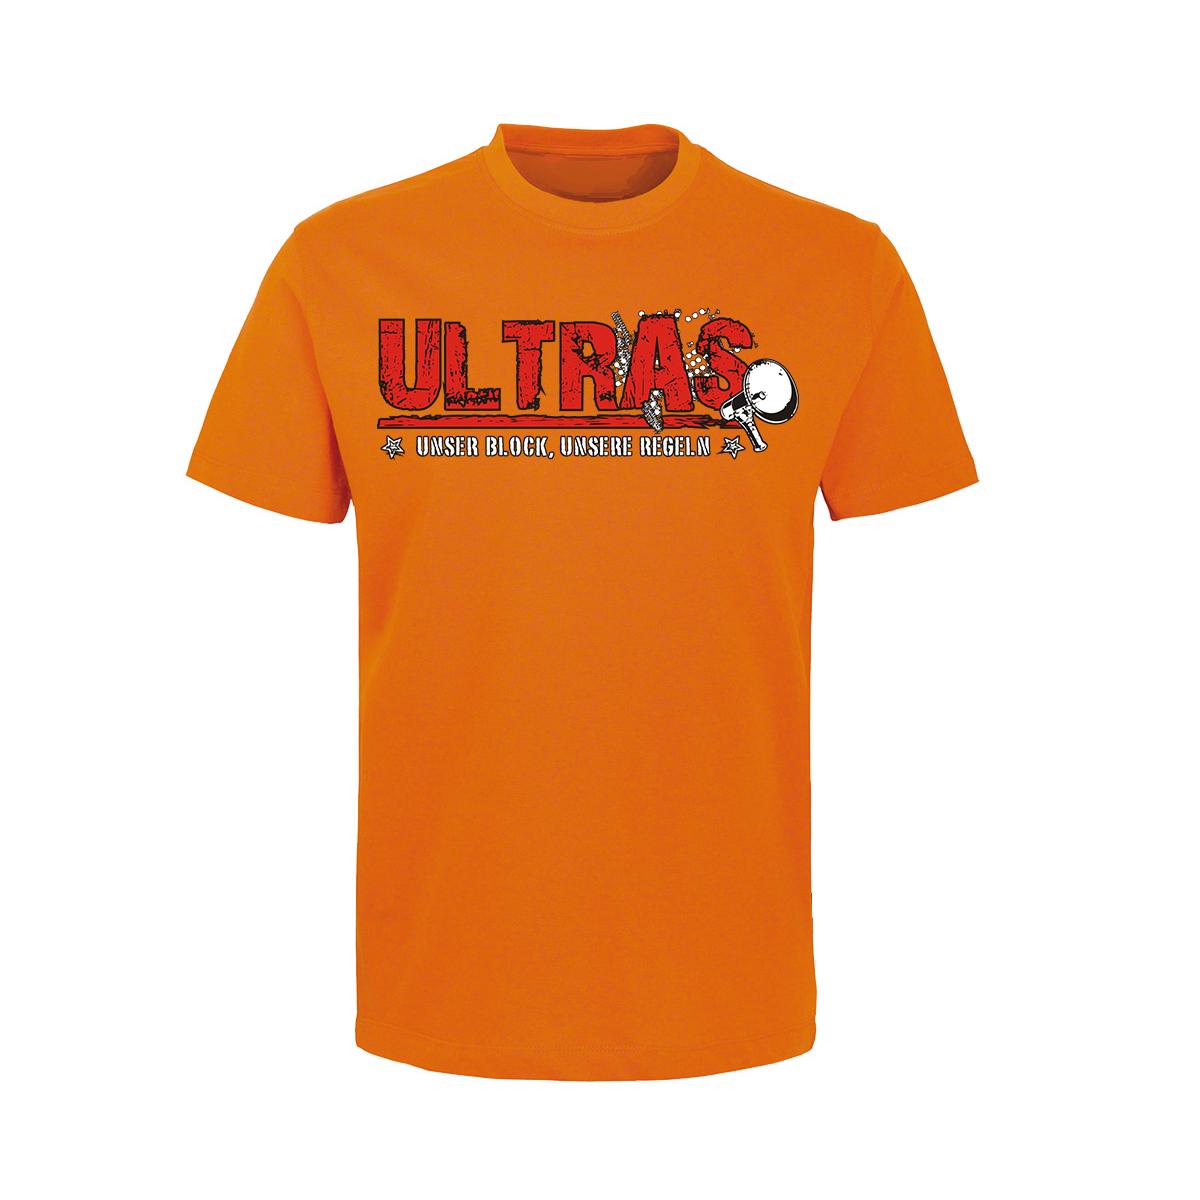 Ultras - Unser Block unsere Regeln - Männer T-Shirt - orange